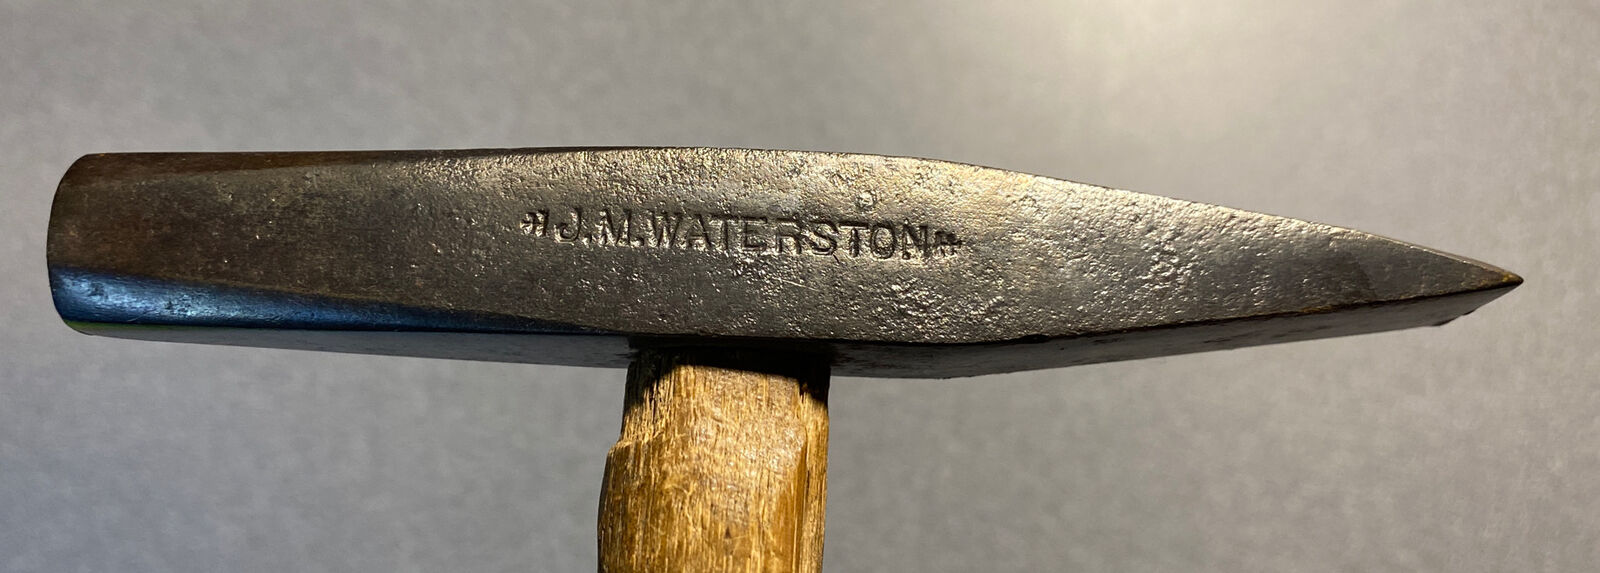 VINTAGE J.M. Waterston Hammer